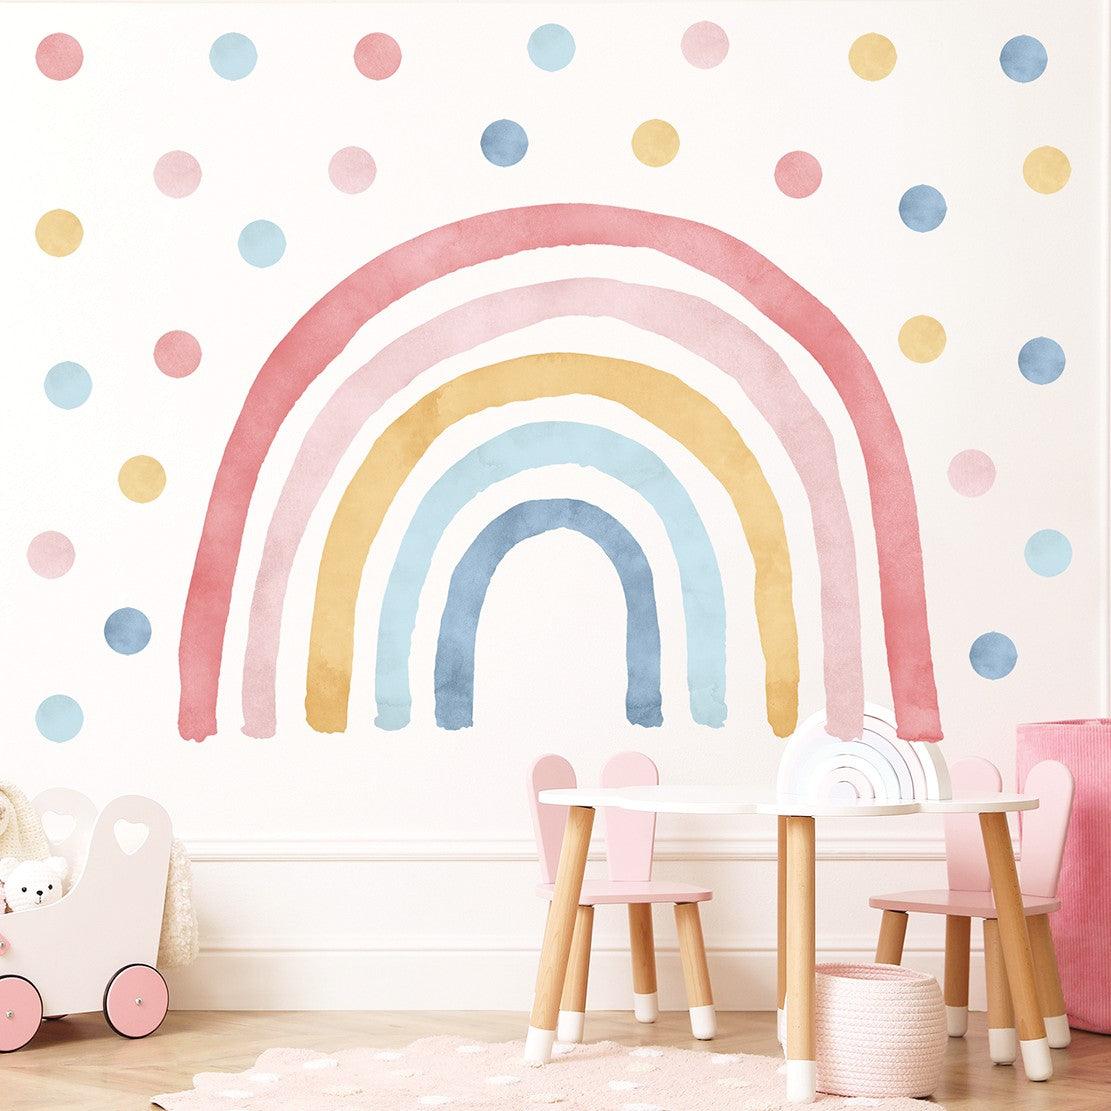 Wandtattoo Kinderzimmer - Regenbogen mit Punkte Pink / Blau